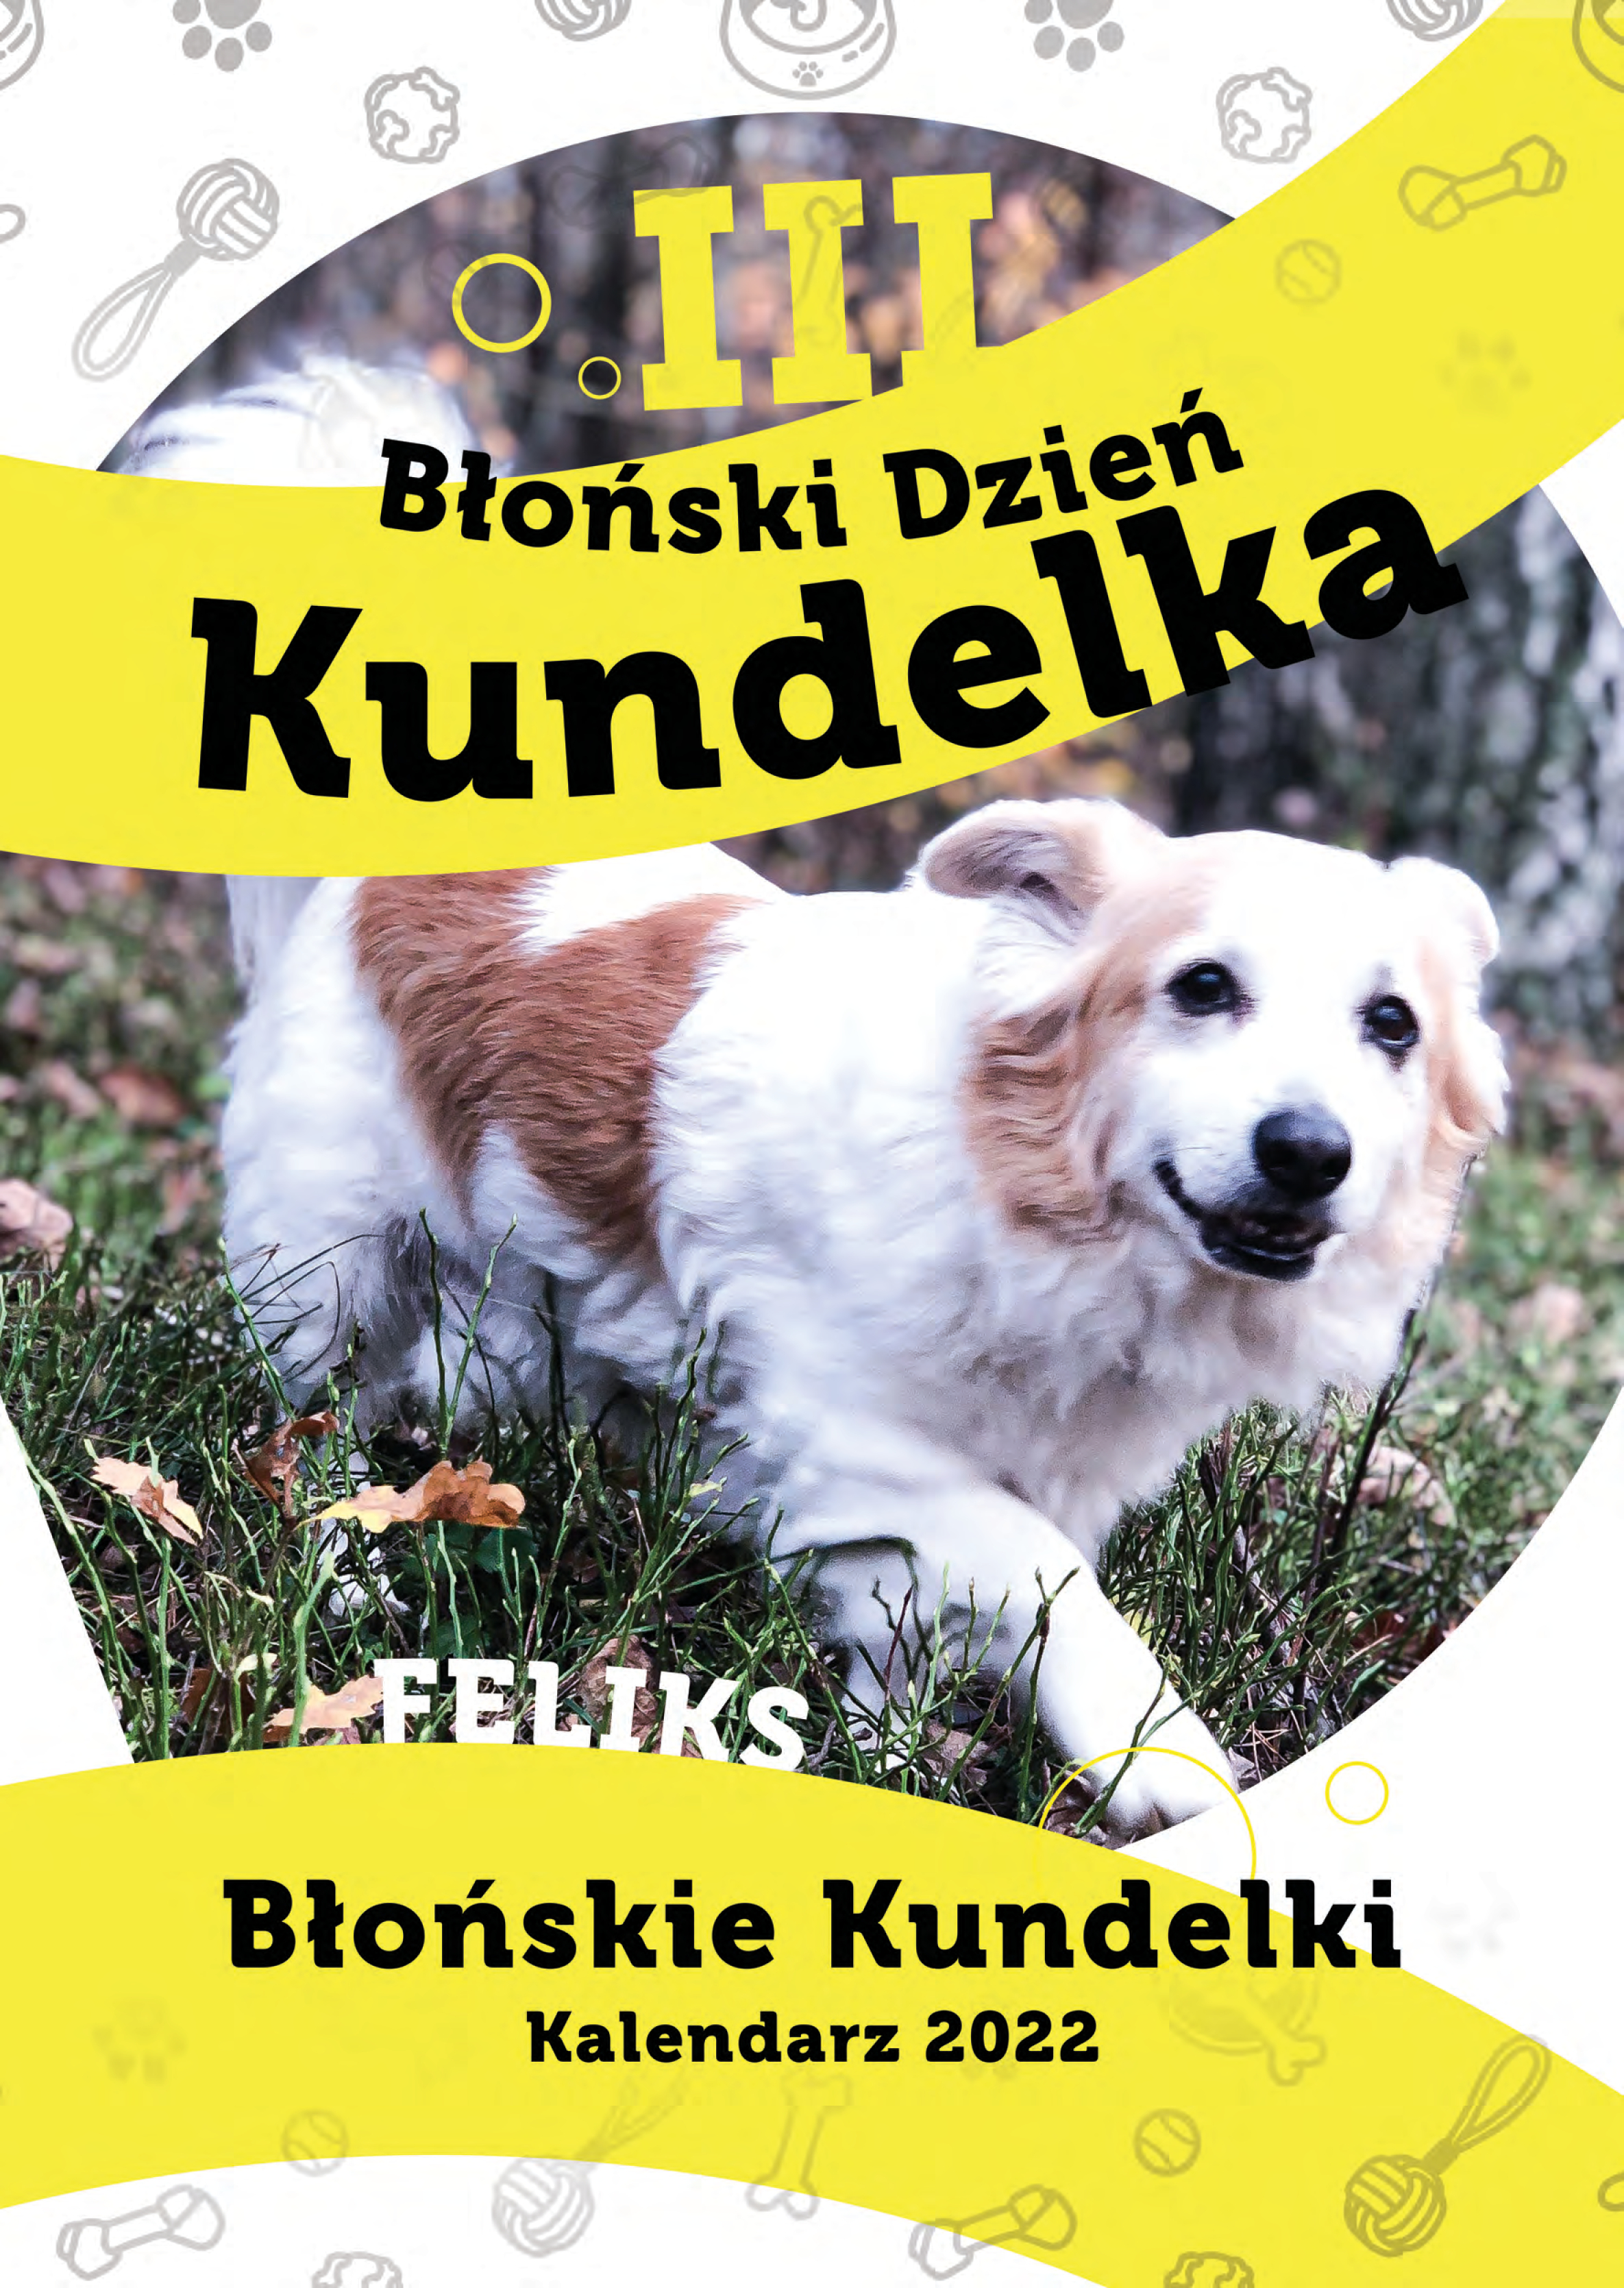 Kalendarze na 2022 “Błońskie Kundelki” – już dostępne! Pomagamy.